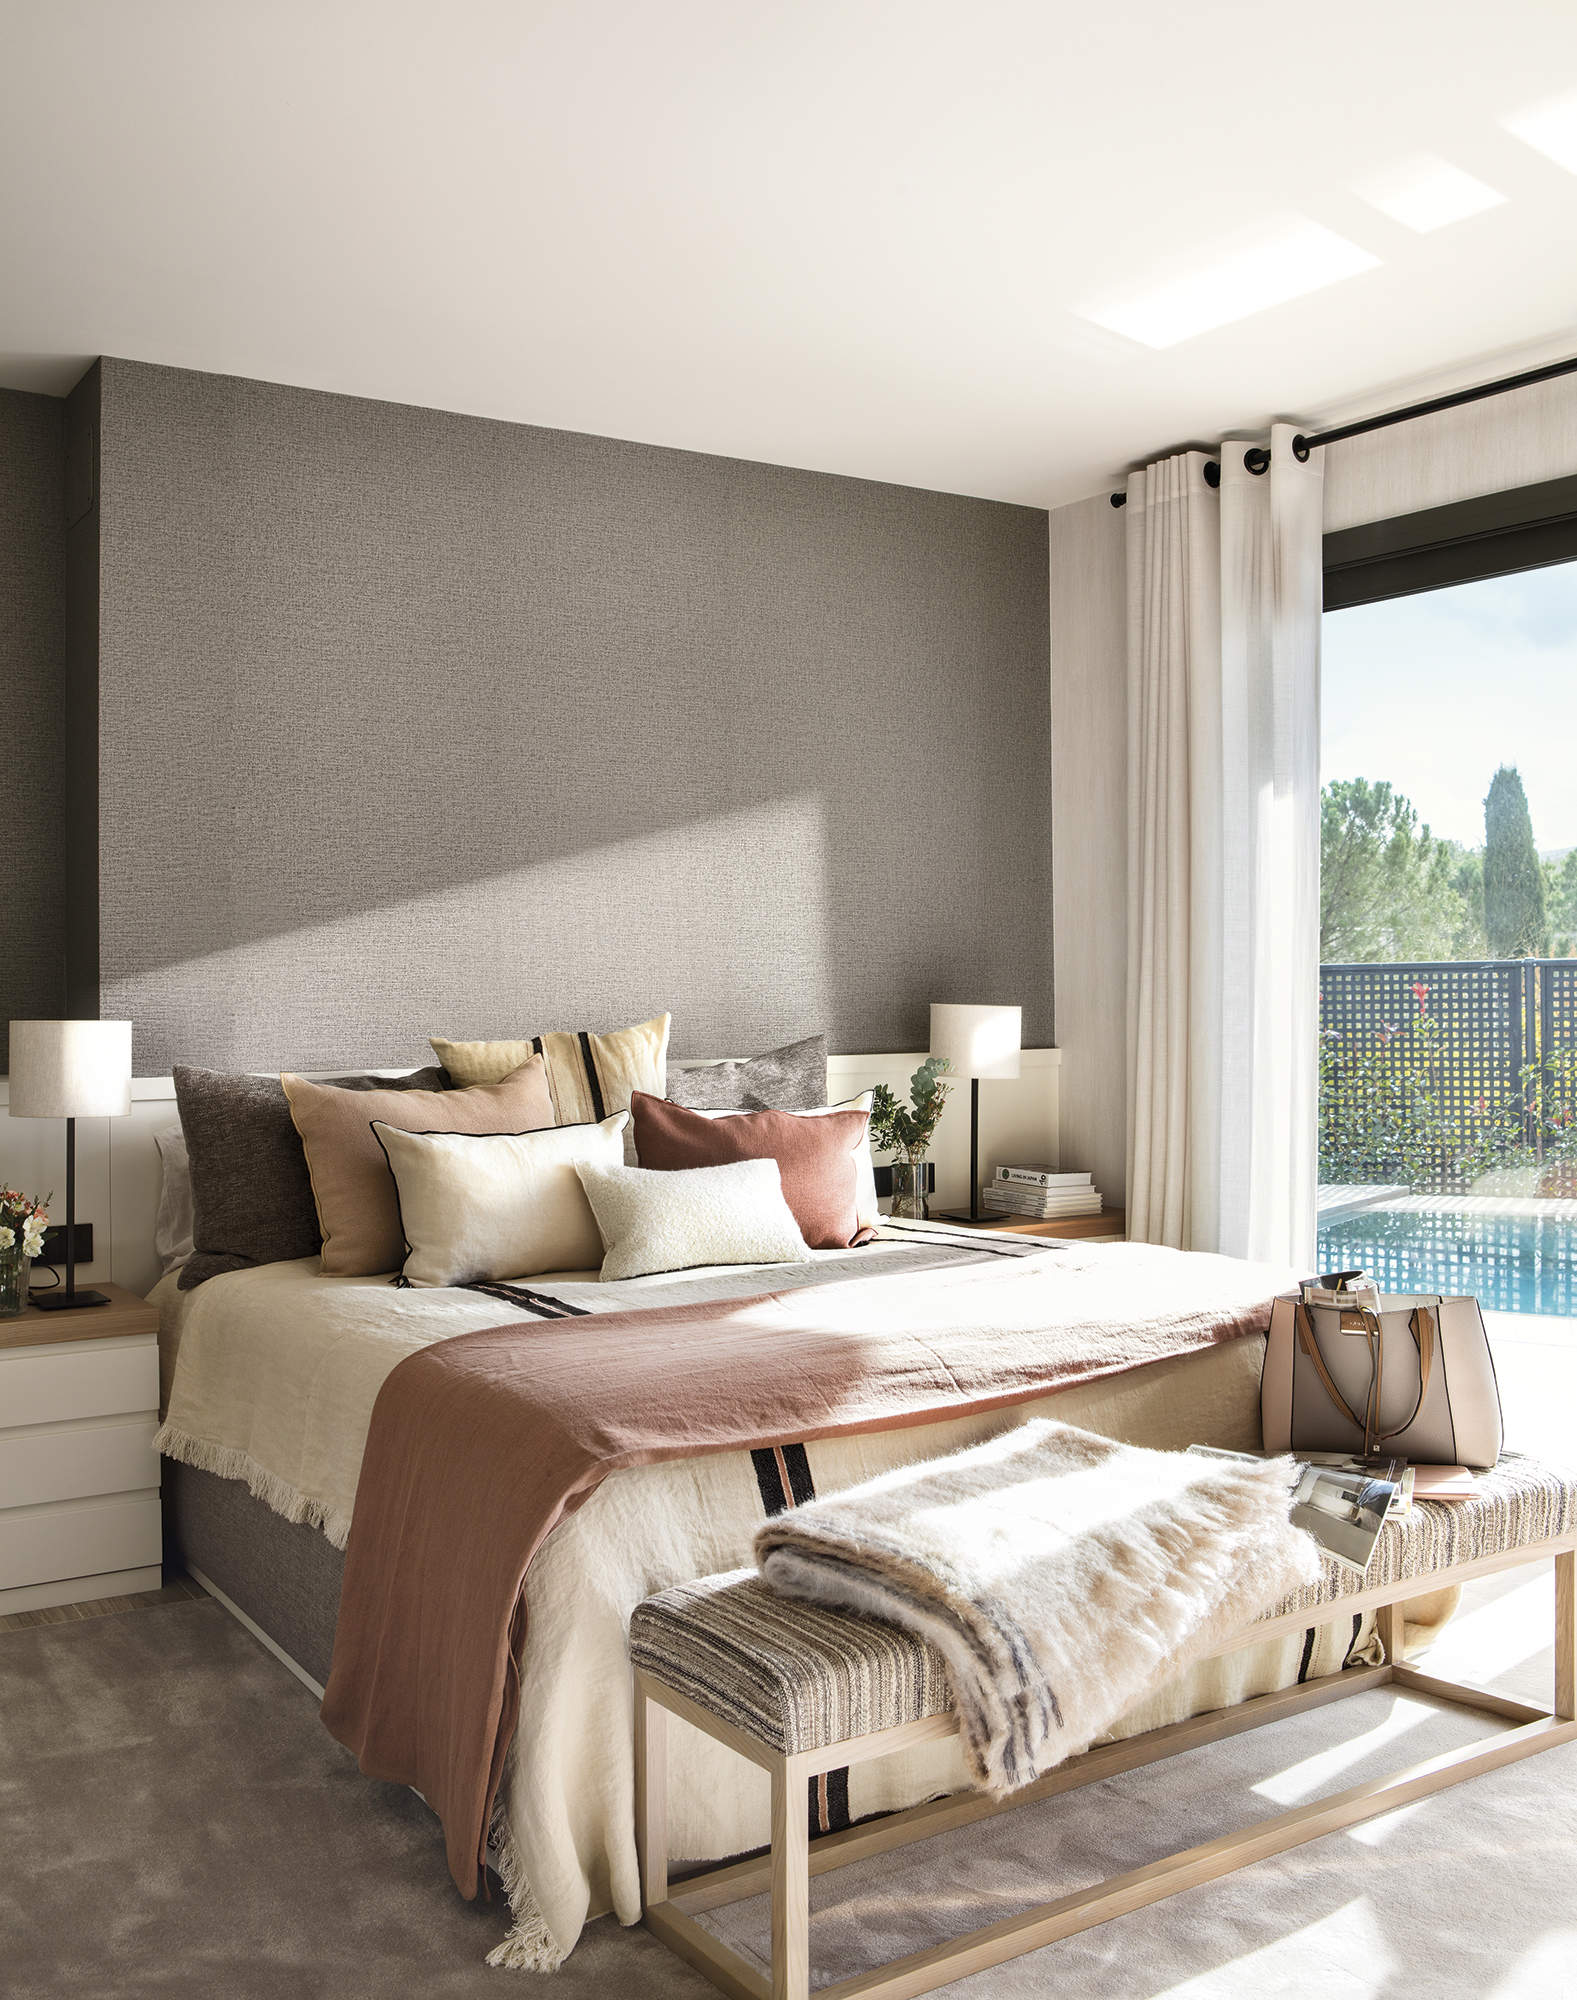 Dormitorio con papel pintado gris, muebles a medida y cortinas blancas por Clara Valls